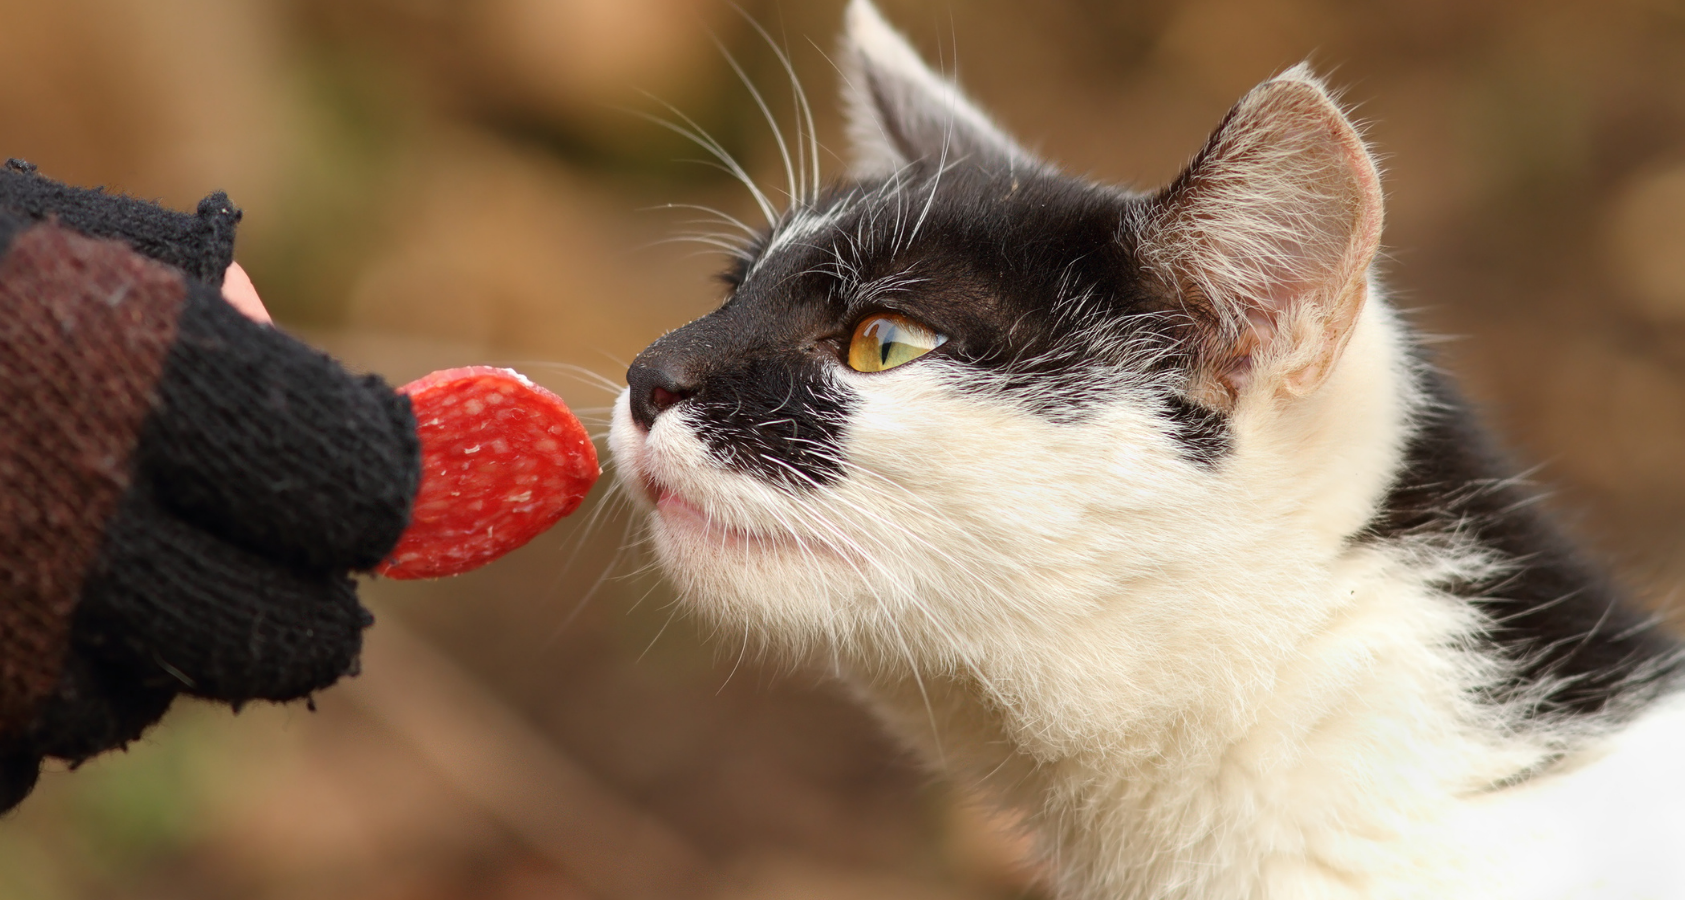 cat eats pepperoni 